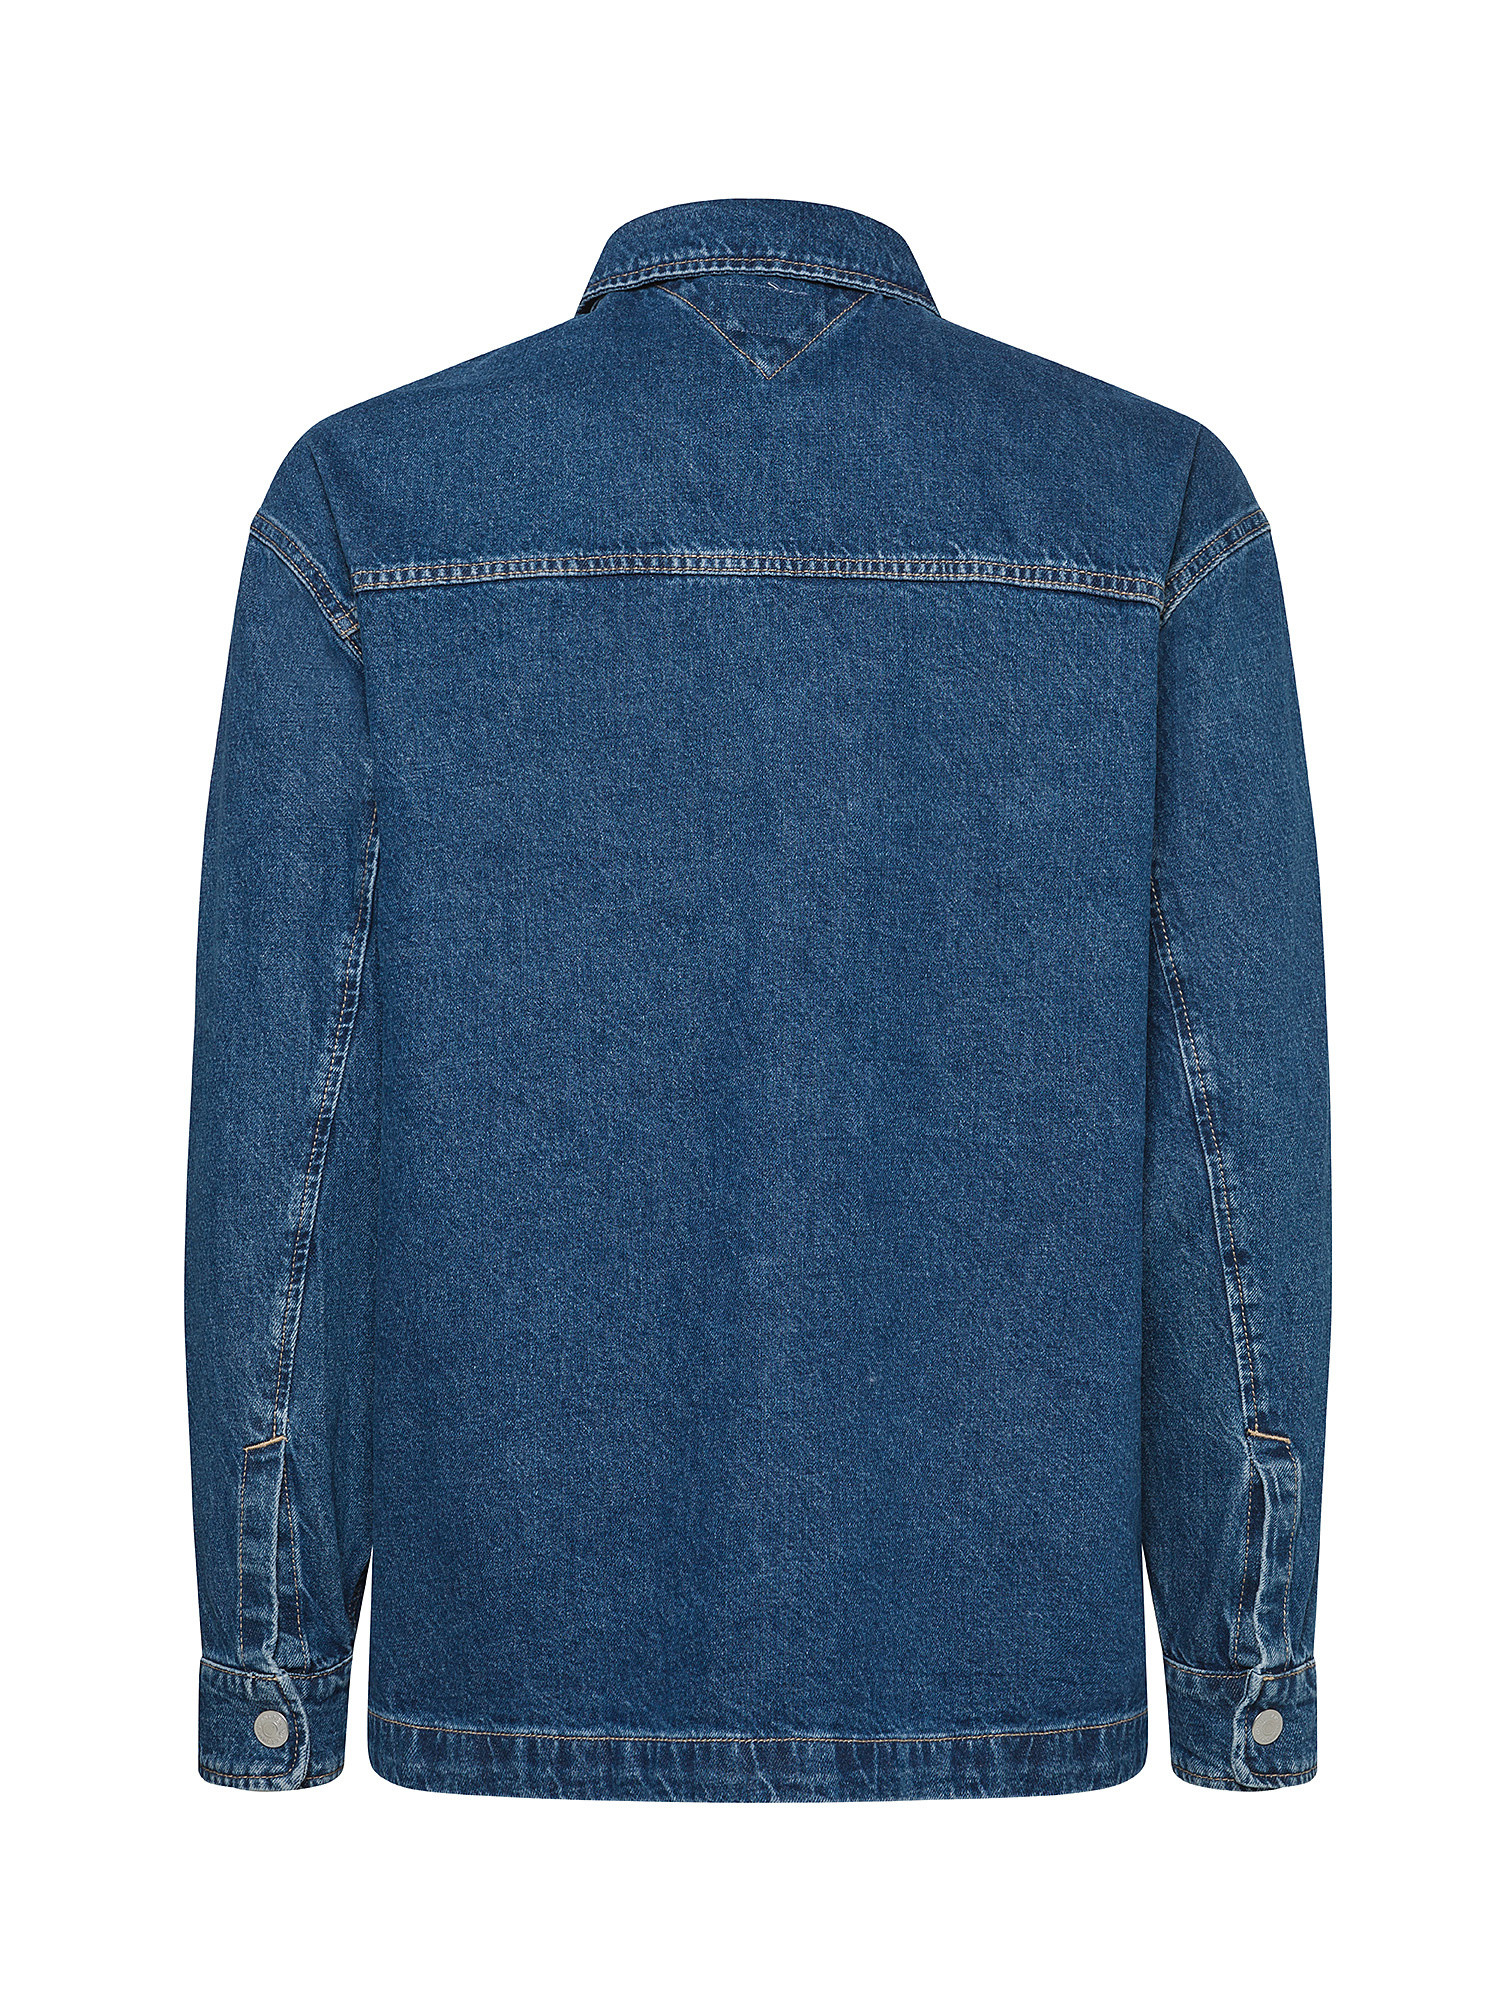 Tommy Jeans - Denim jacket, Denim, large image number 1